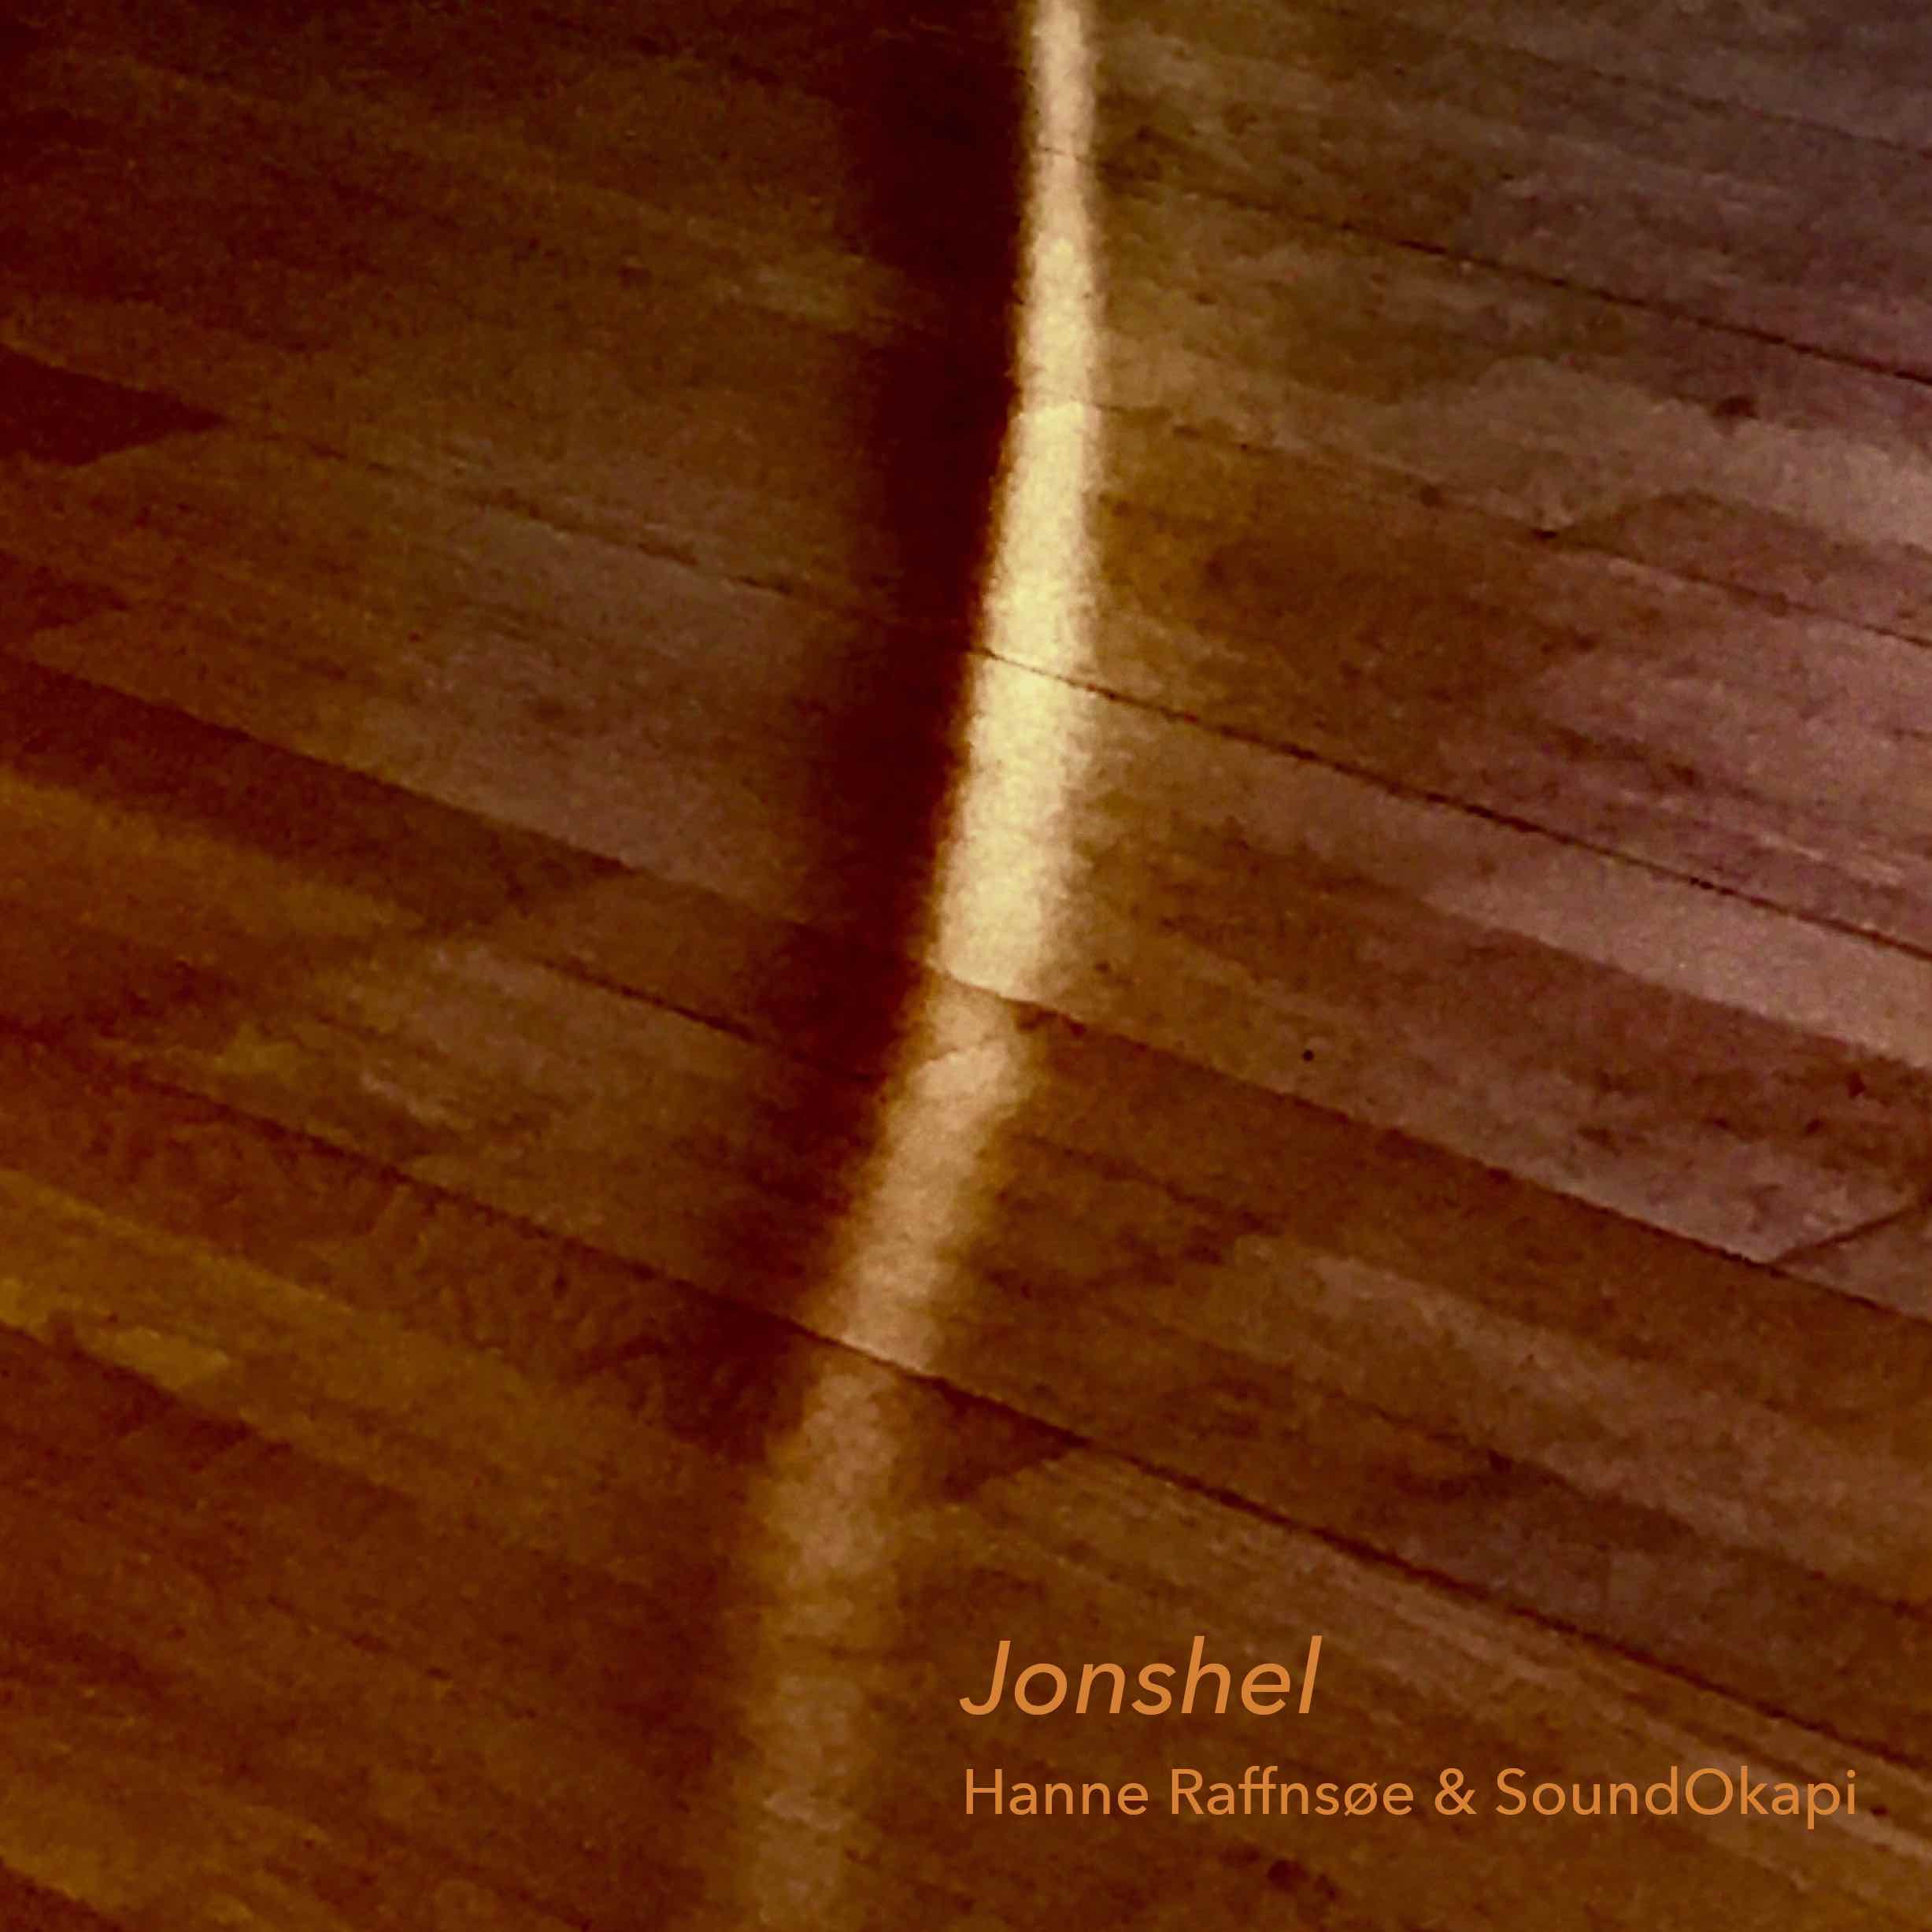 album cover, beam of light on floor